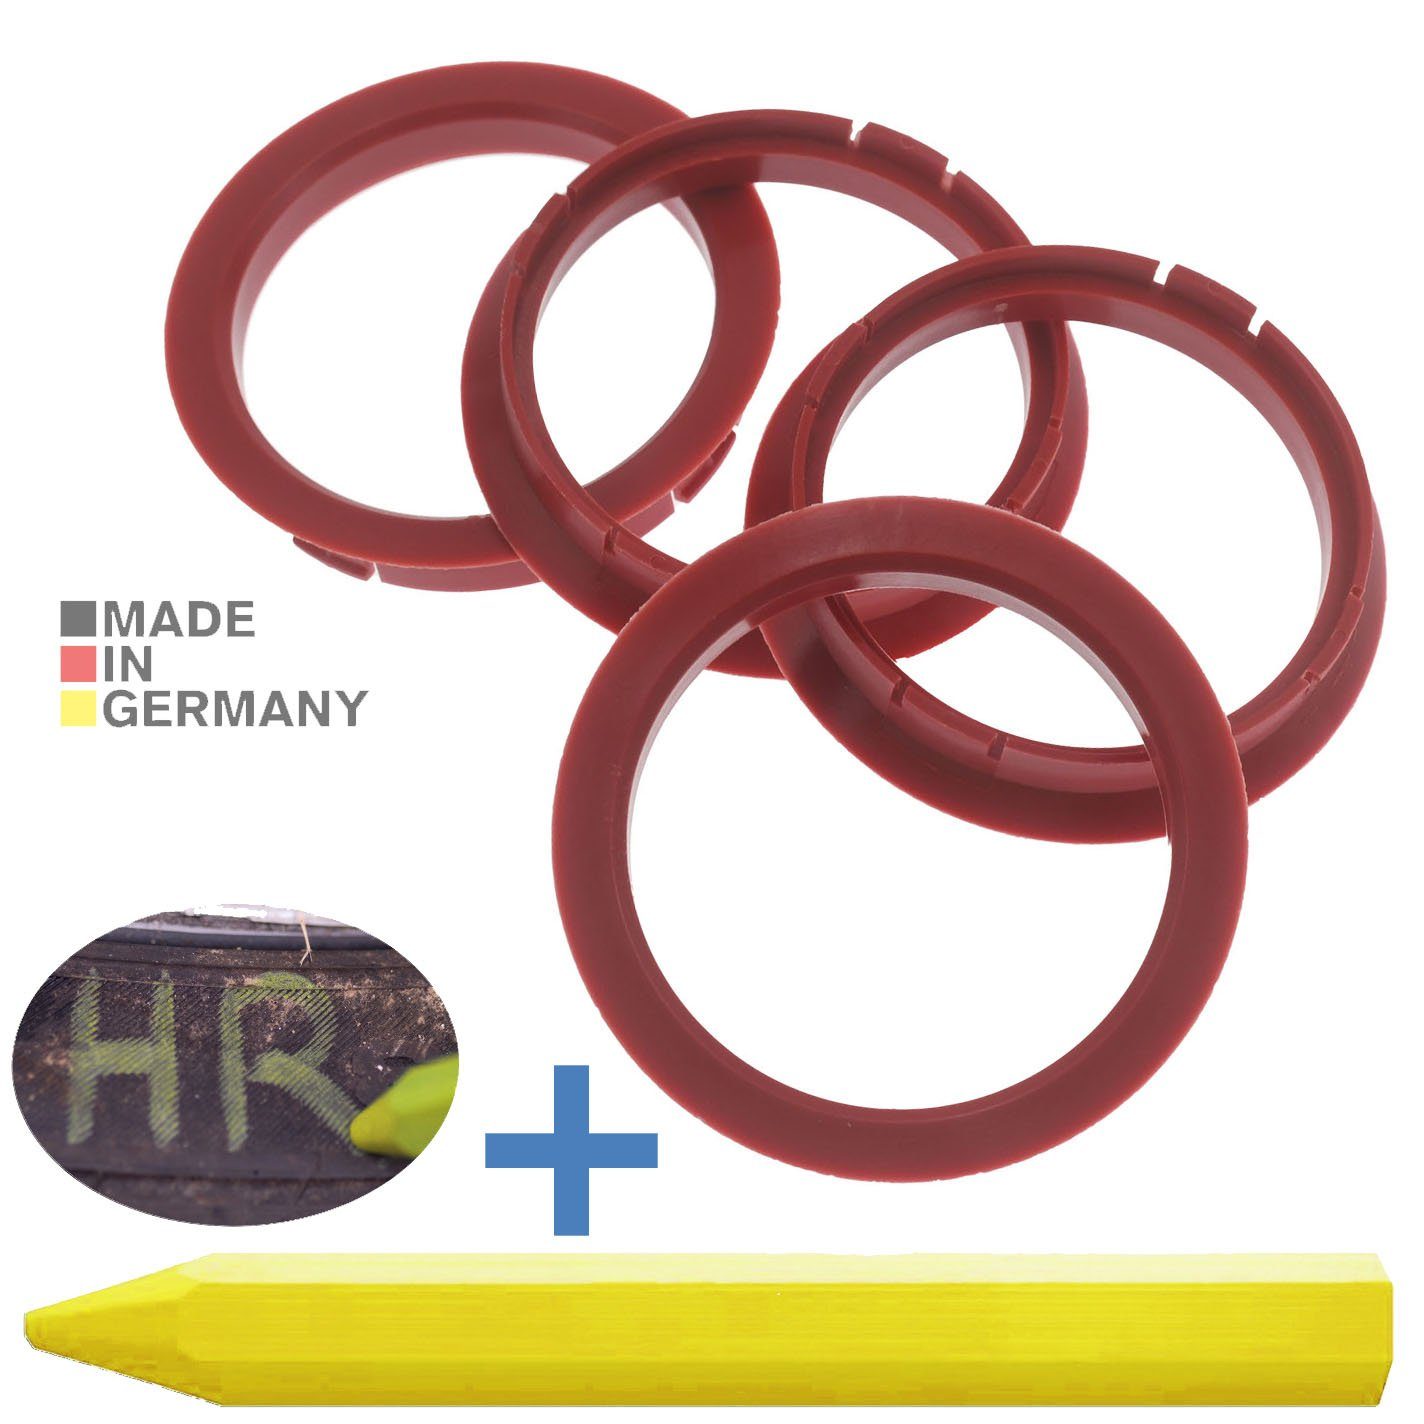 RKC Reifenstift 4X Zentrierringe Rot Felgen Ringe + 1x Reifen Kreide Fett Stift, Maße: 72,5 x 64,1 mm